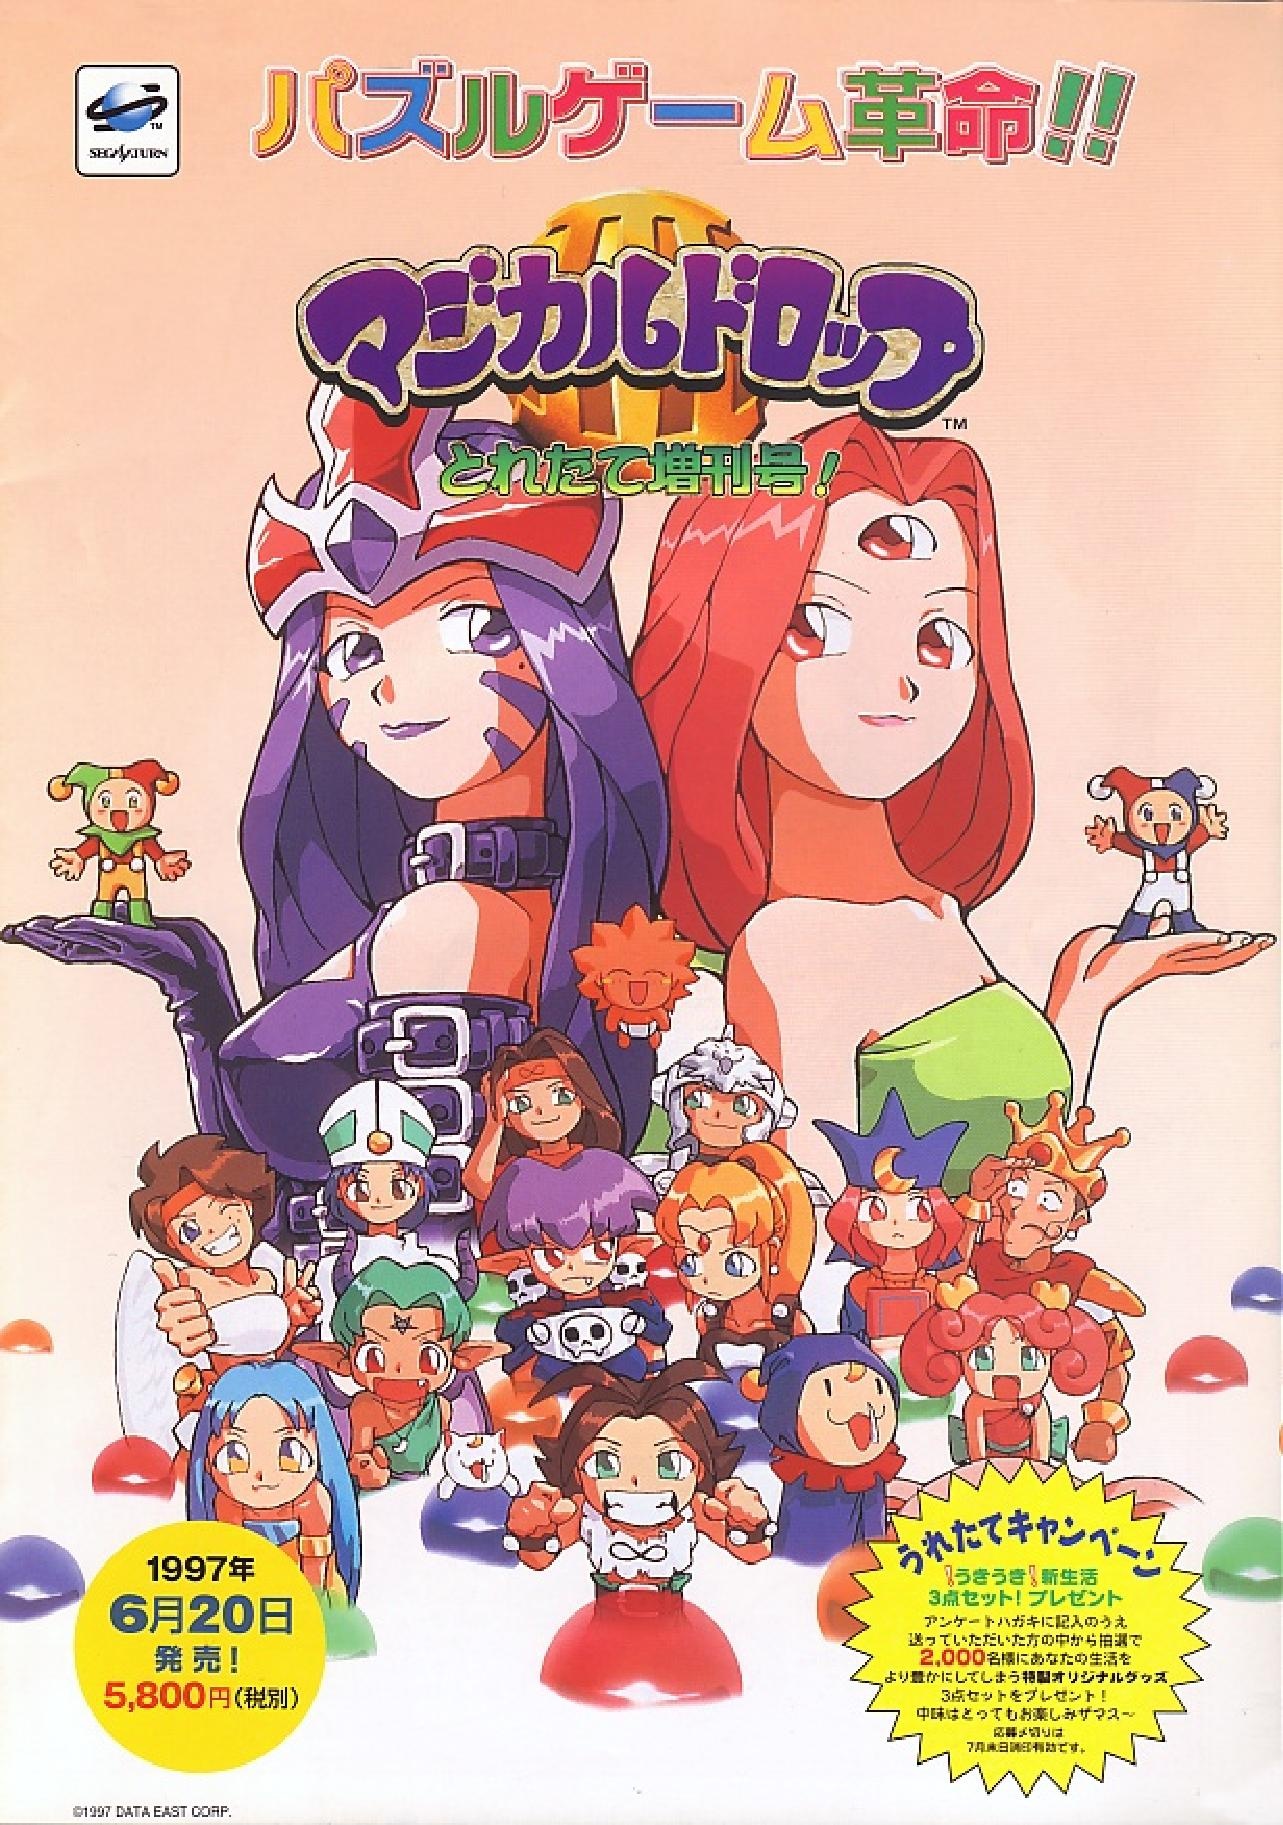 SS]マジカルドロップIII(Magical Drop 3) とれたて増刊号!(19970620 